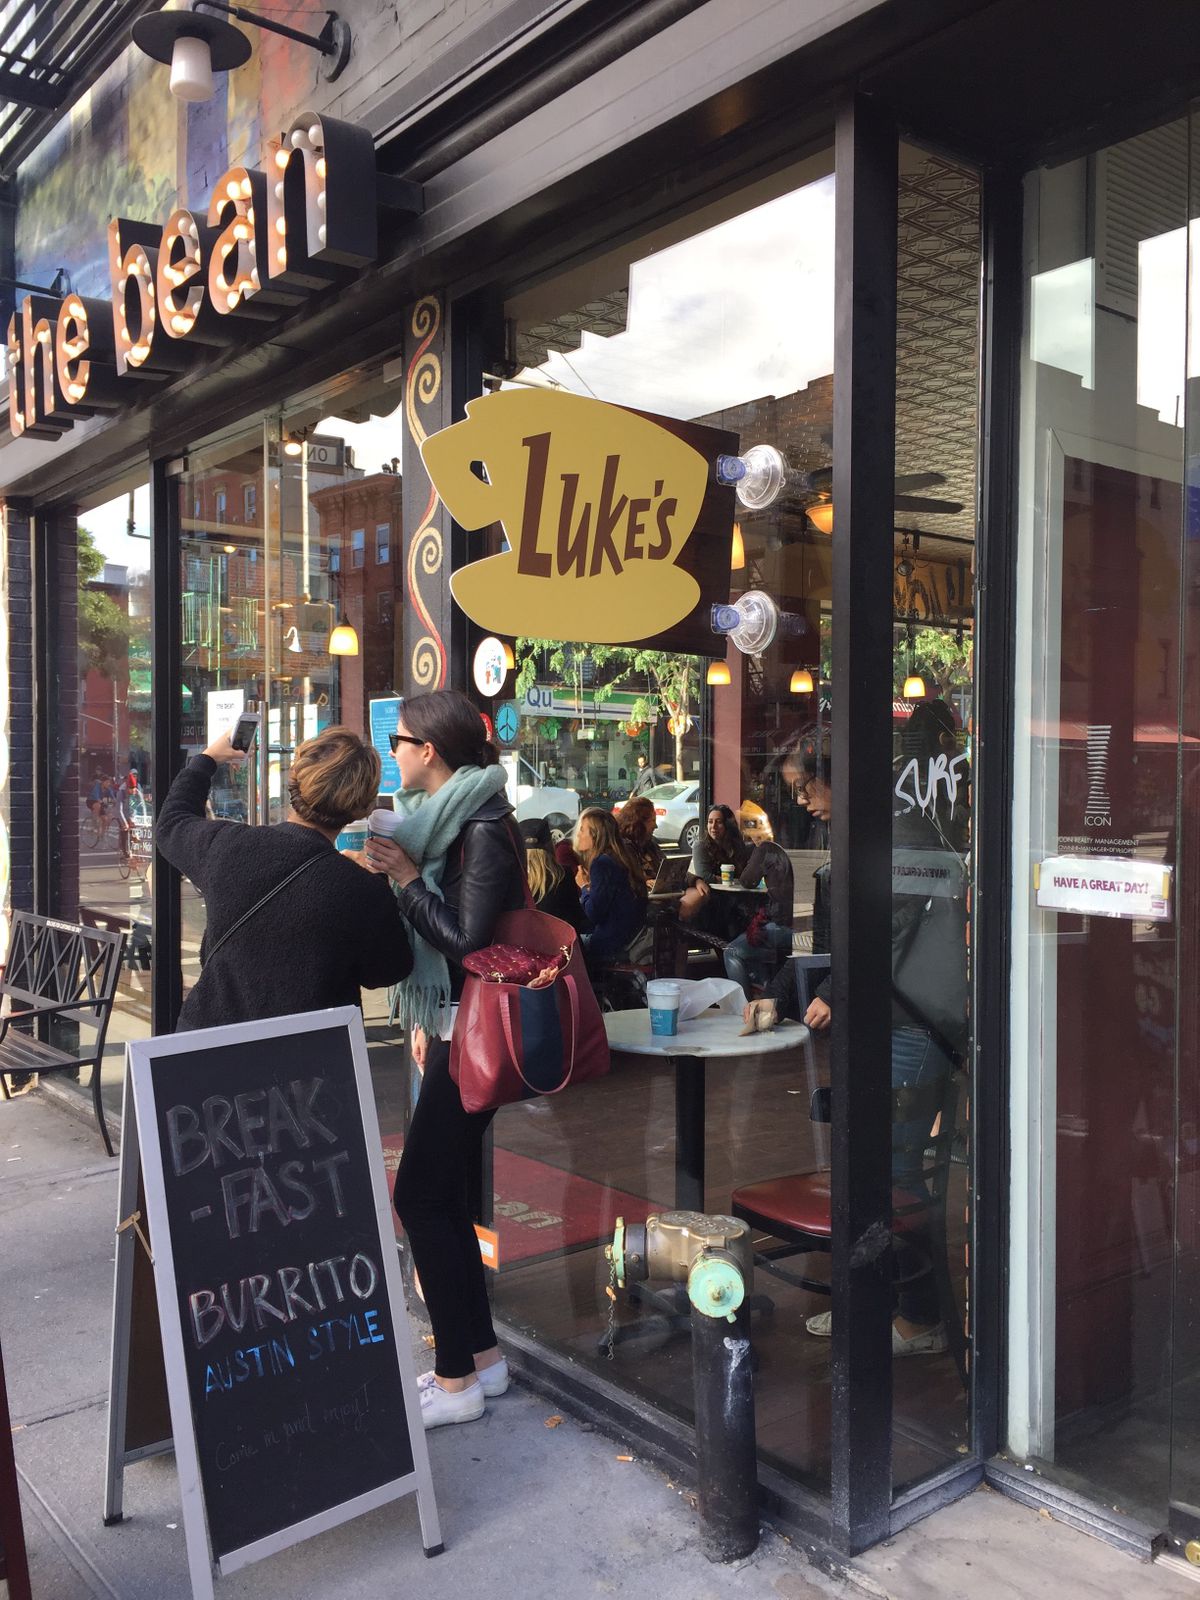 The Bean as Luke's Diner